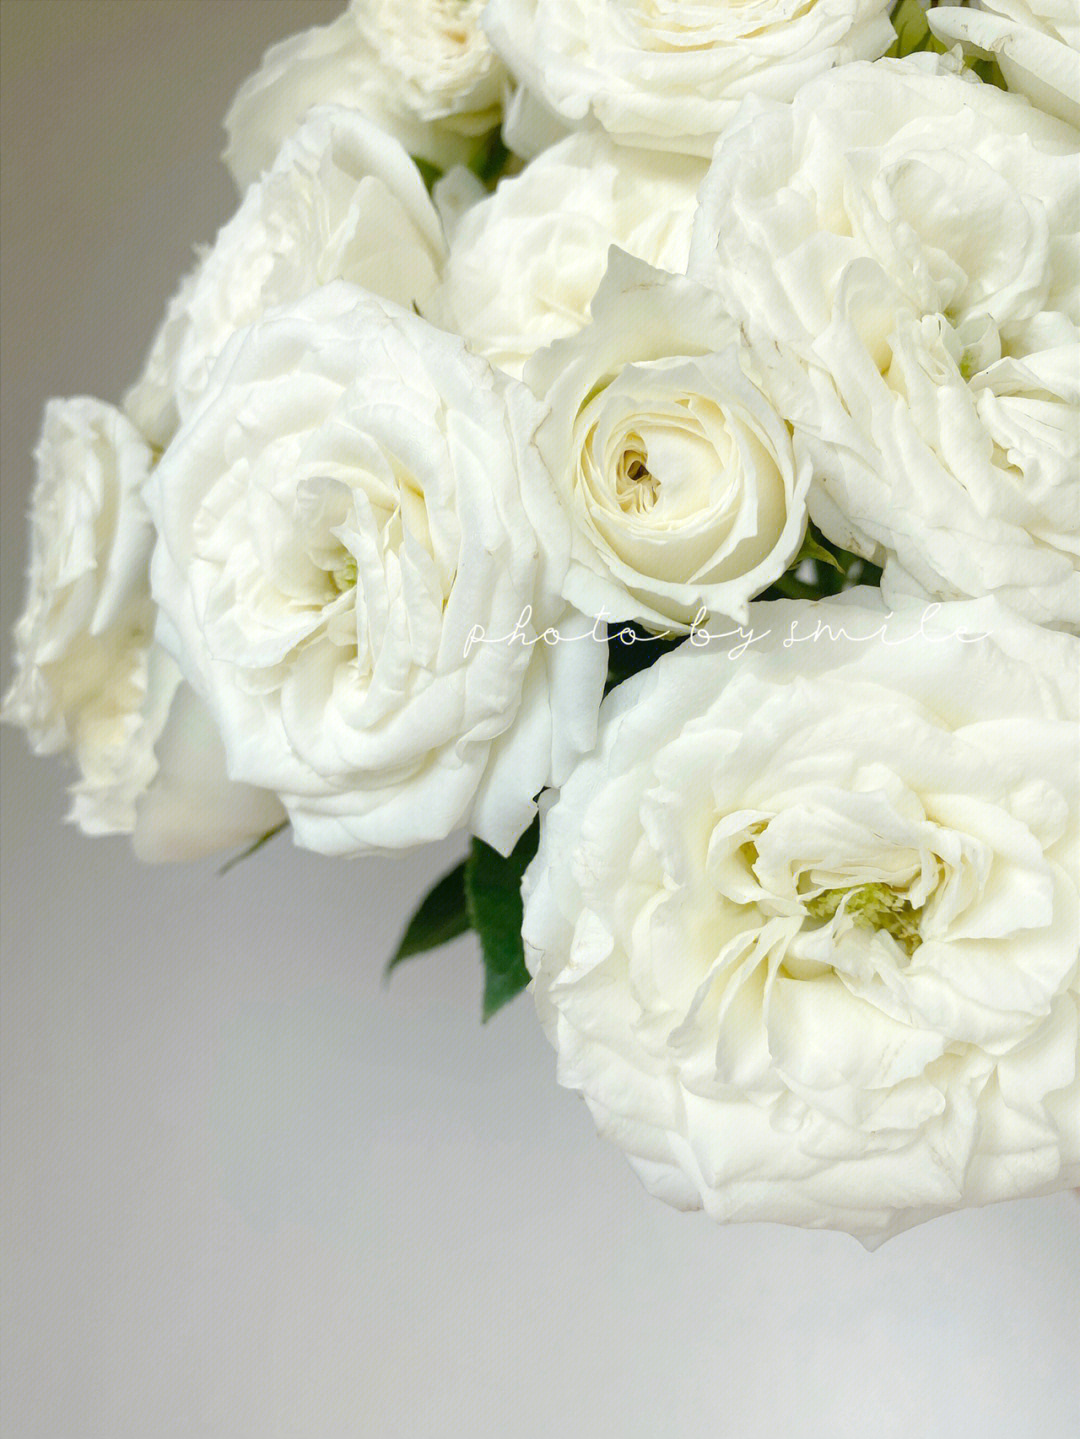 白色多头玫瑰品种图片